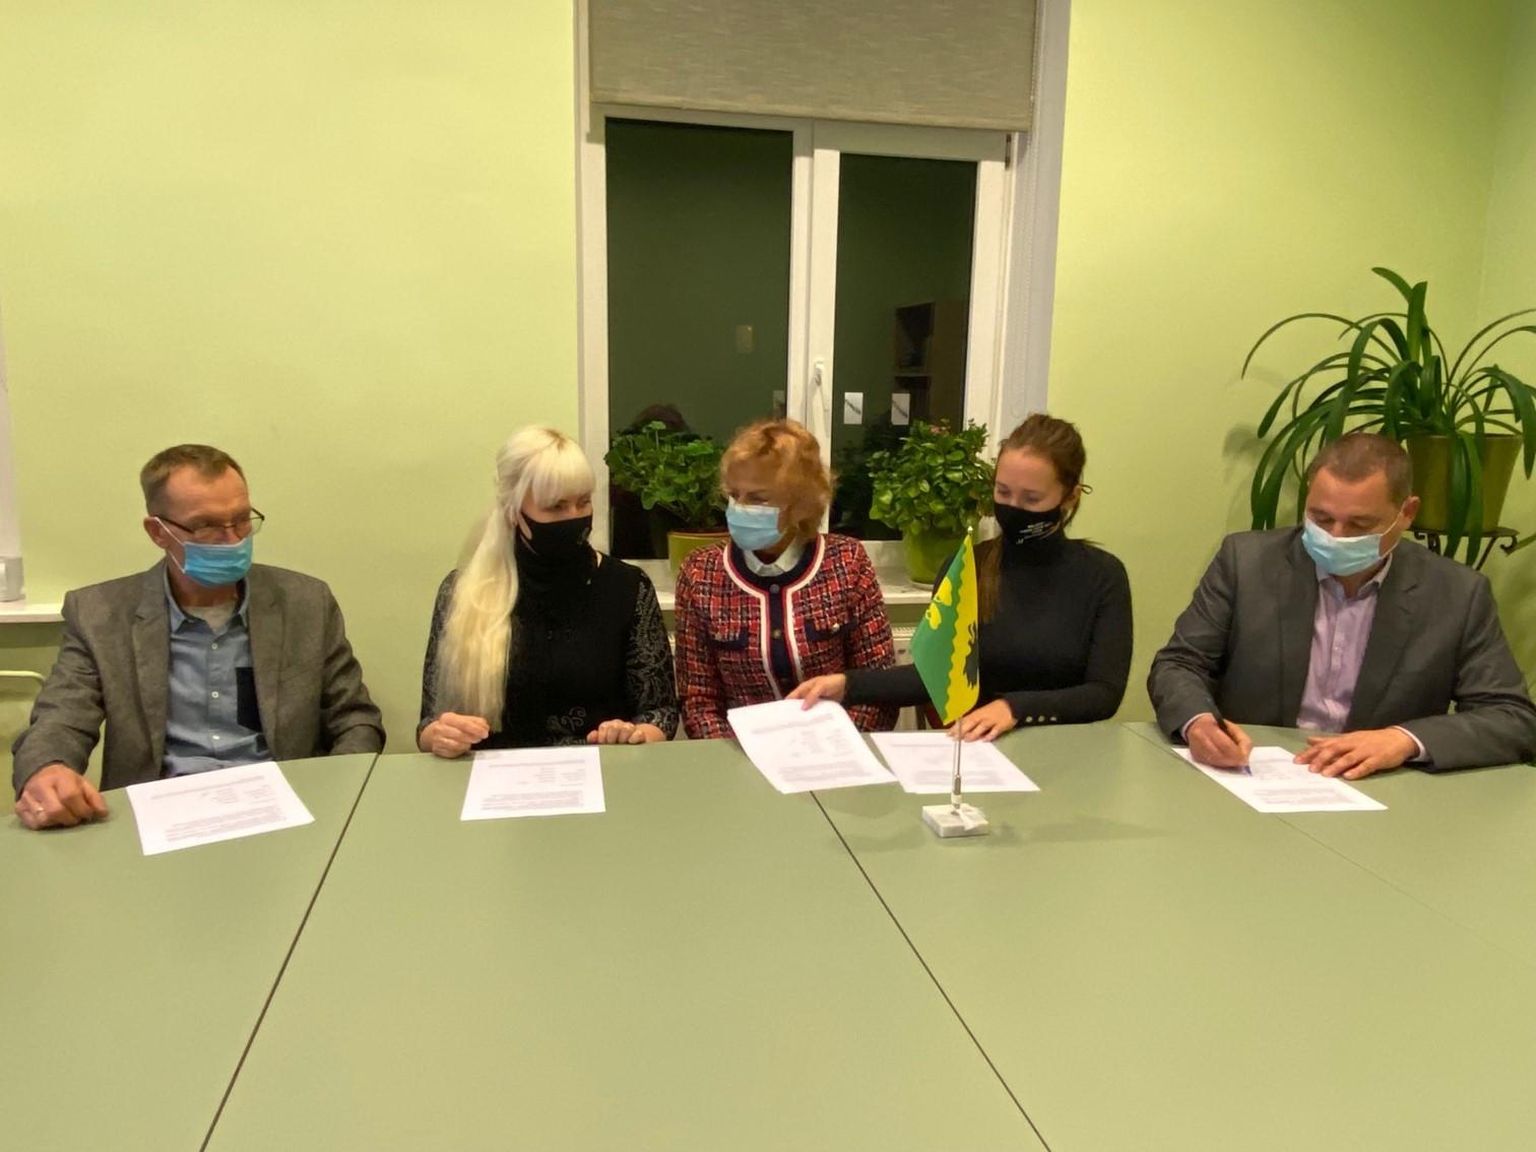 Põhja-Pärnumaa koostööleppe allkirjastasid Peeter Perm (EKRE), Riina Kukk, Ülle Vapper (valimisliit Meie Vald), Mari-Liis Jaanson (valimisliit Vändra Noored) ja Jaanus Rahula (valimisliit Inimeste Eest).